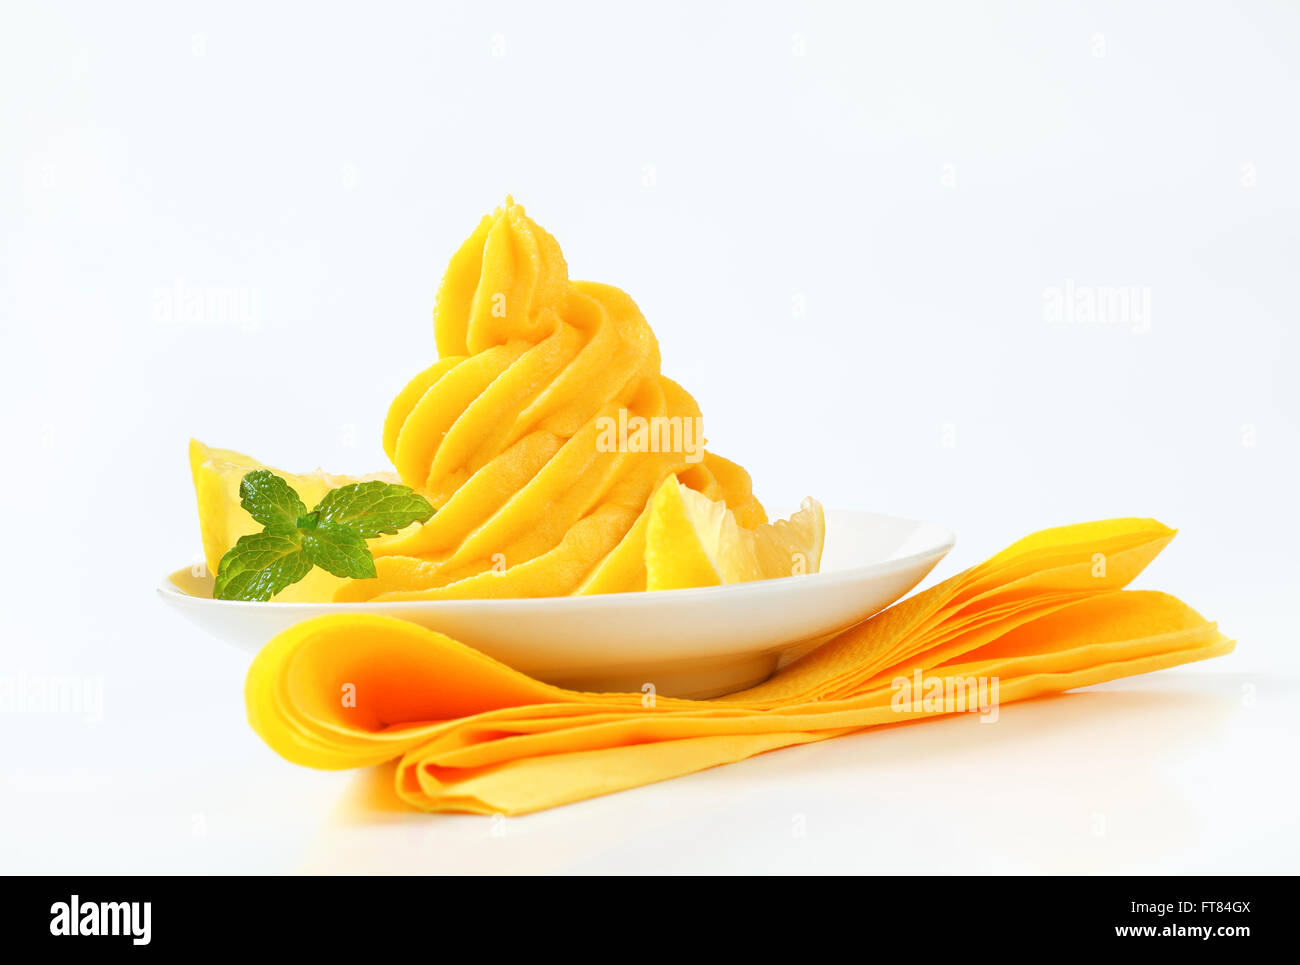 Strudel der gelbe Creme mit Zitronenvierteln garniert Stockfoto